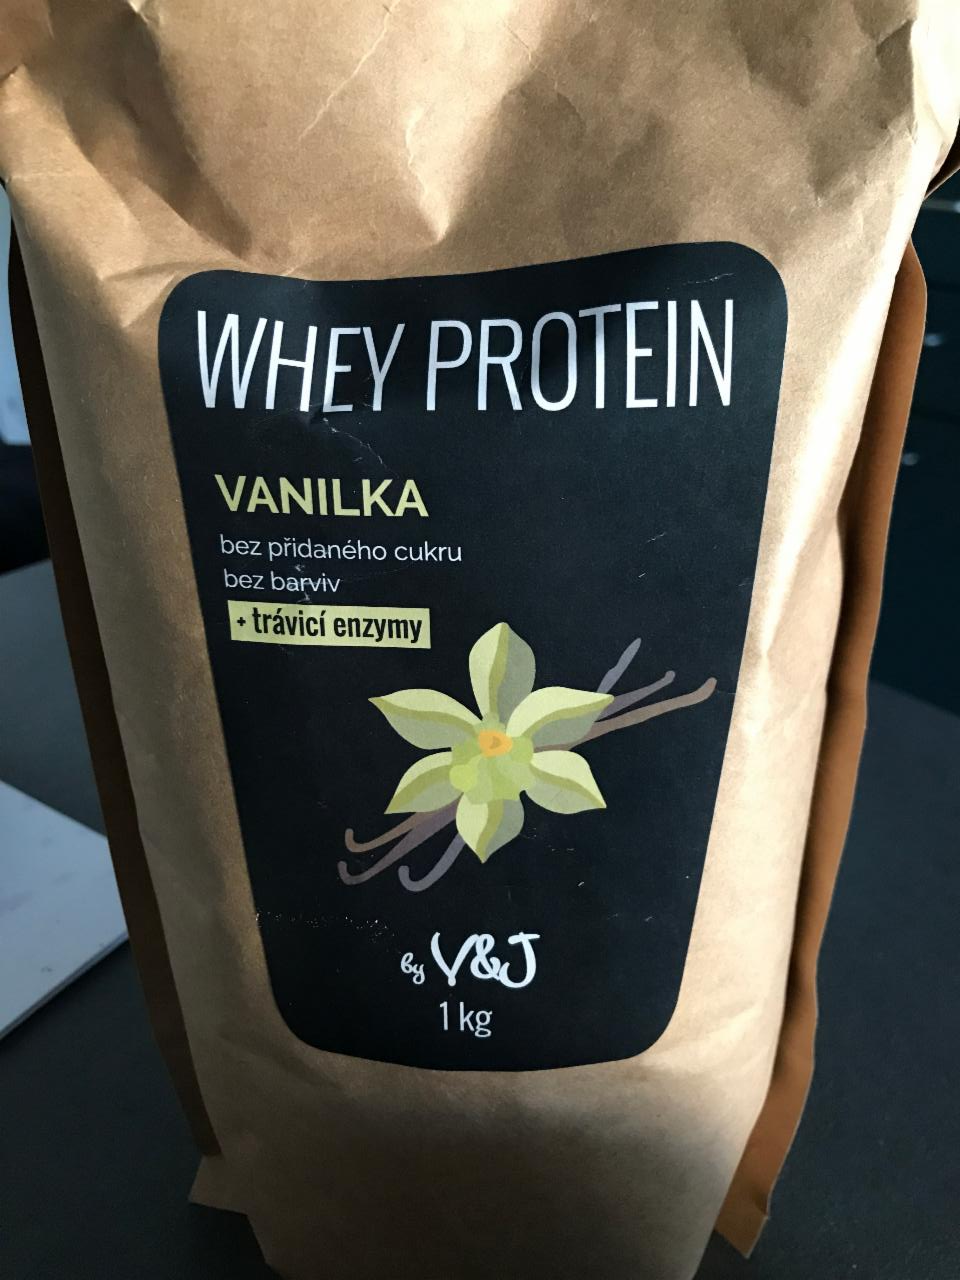 Fotografie - whey protein vanilka V&J